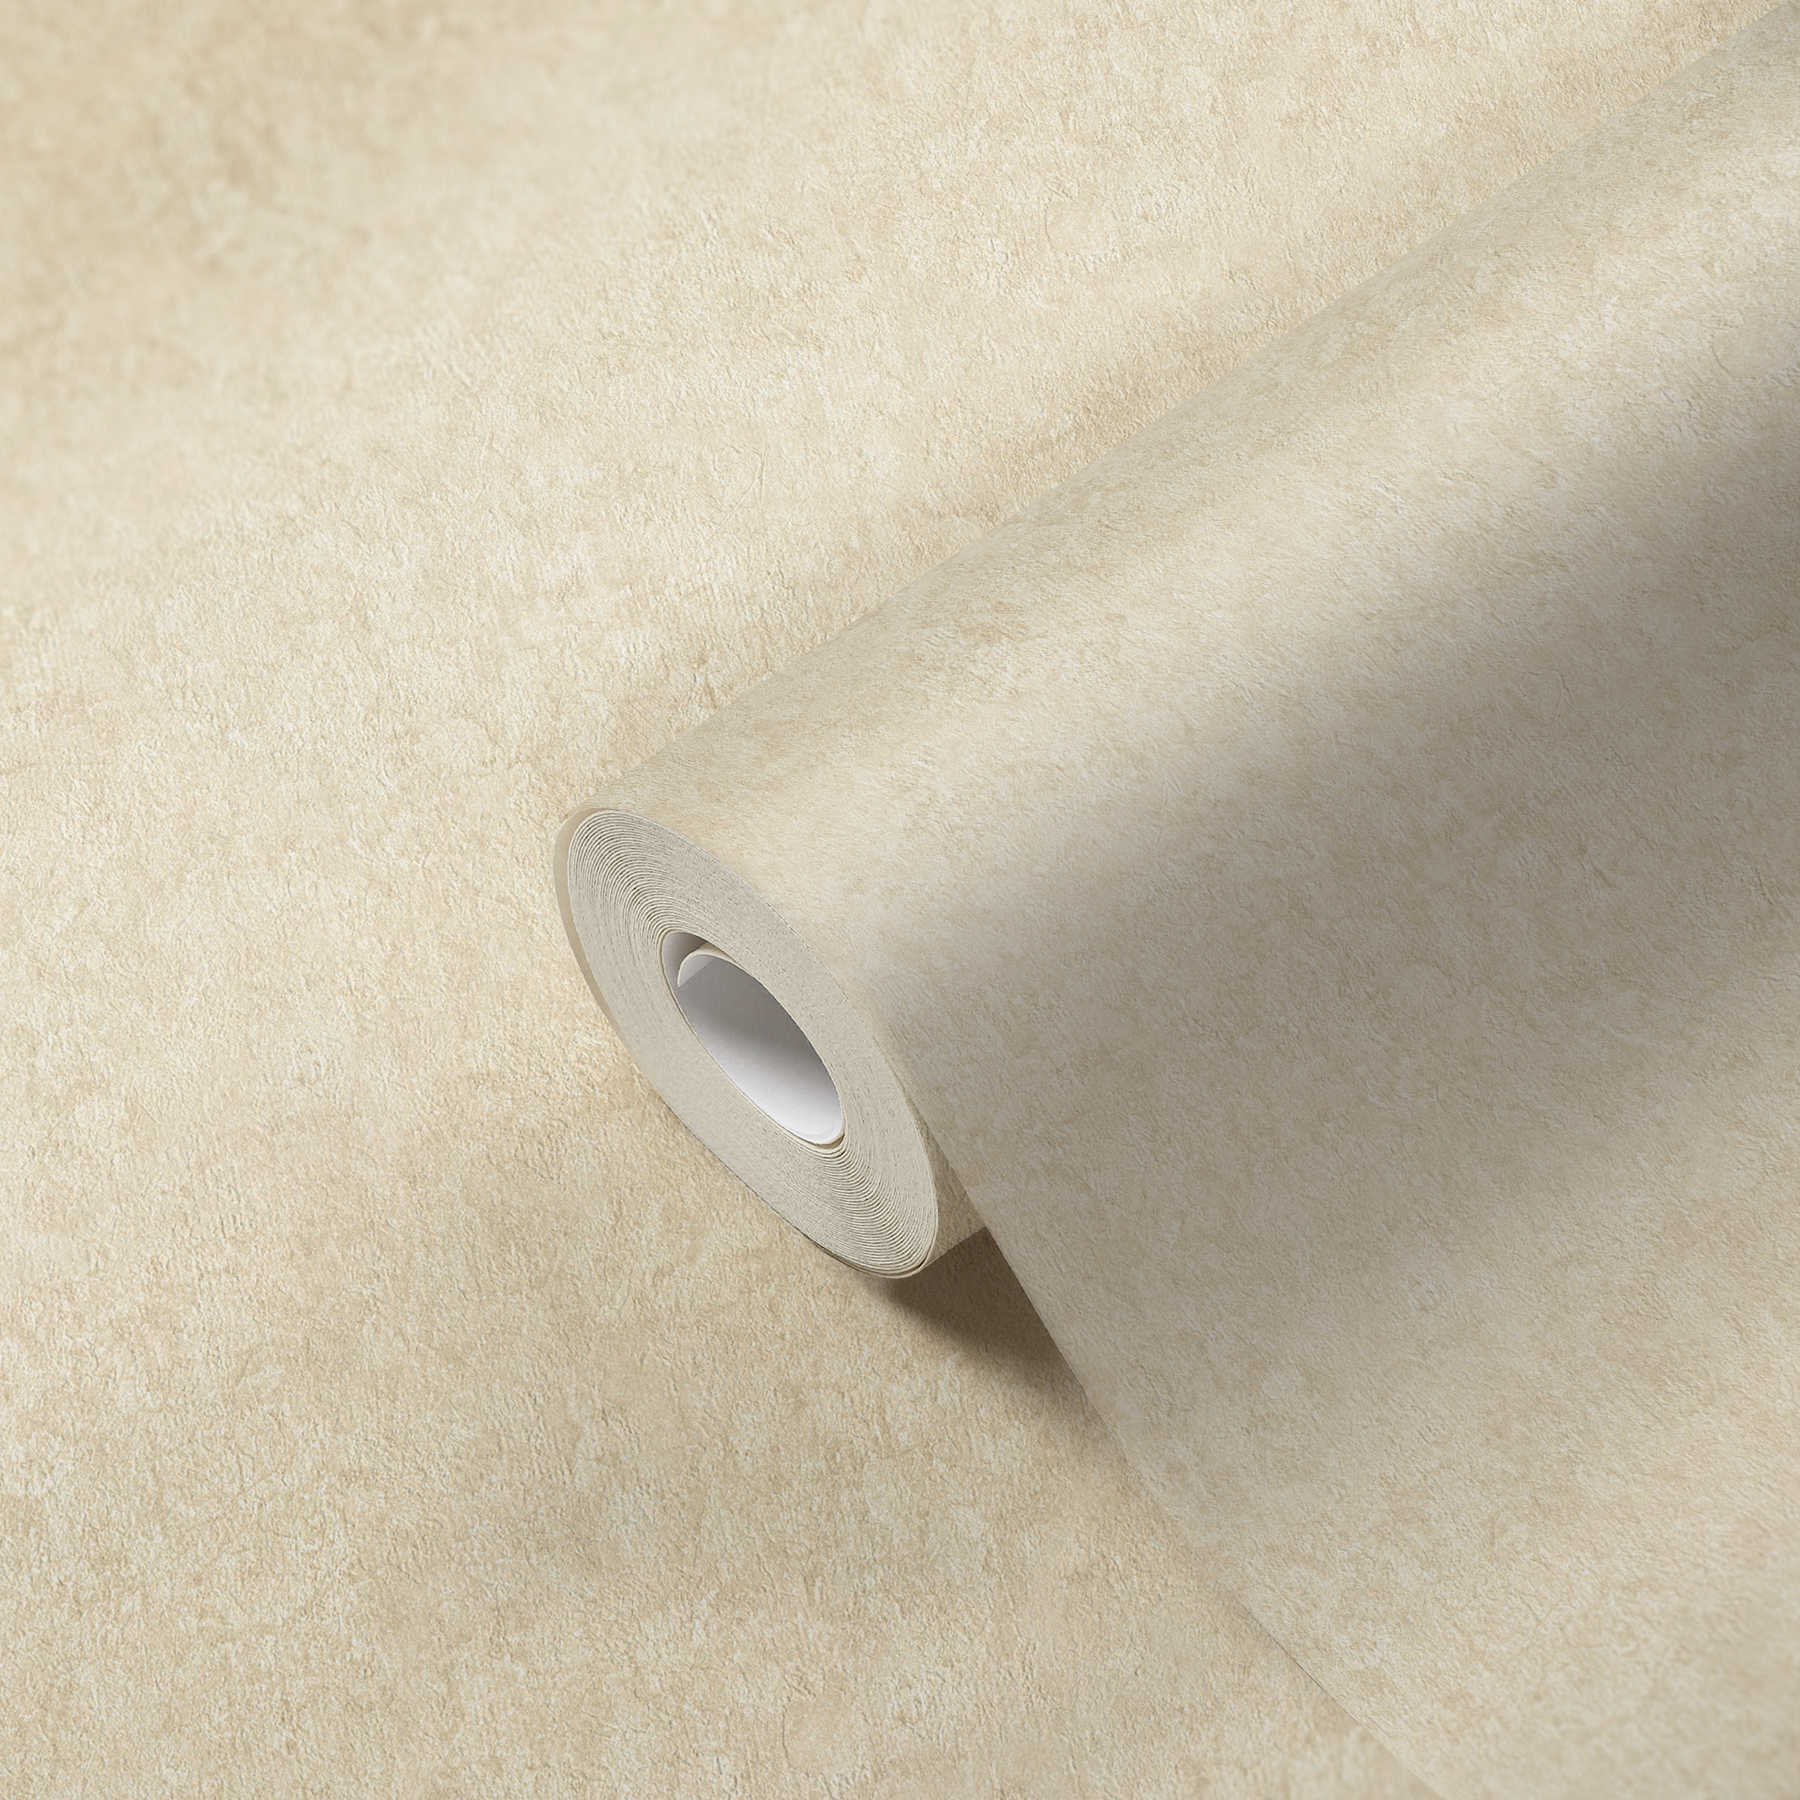             High quality wallpaper plain textile structure - beige
        